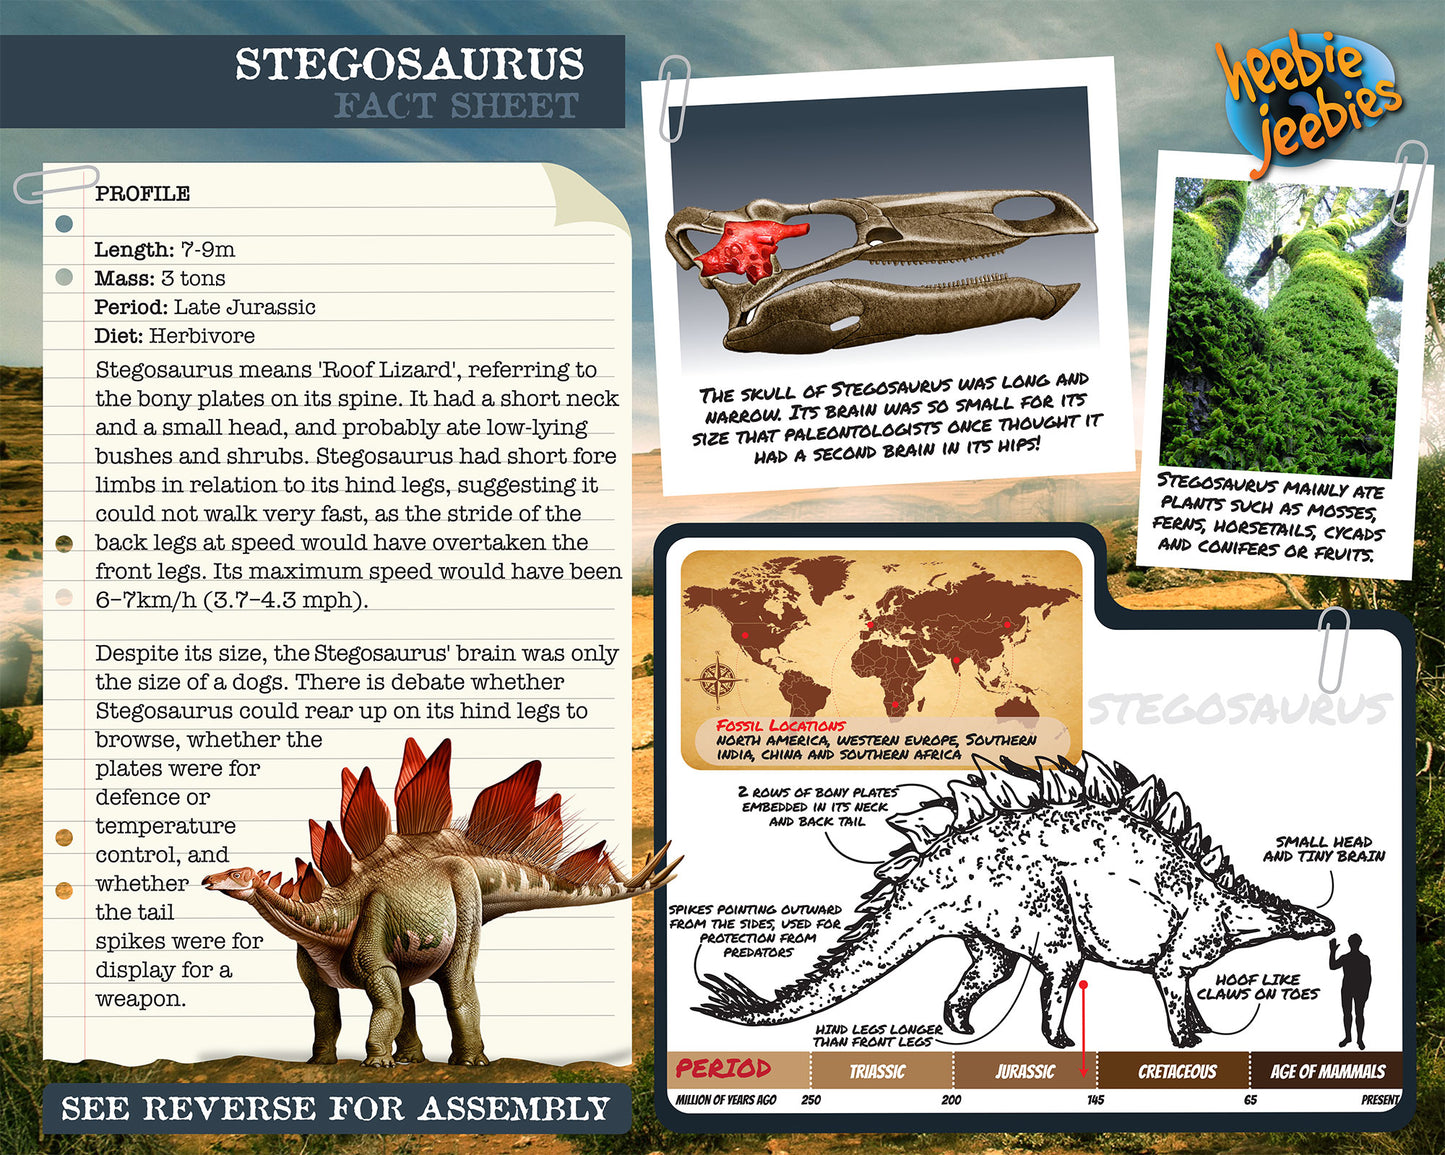 Stegosaurus 3D Wood Modeling Kit